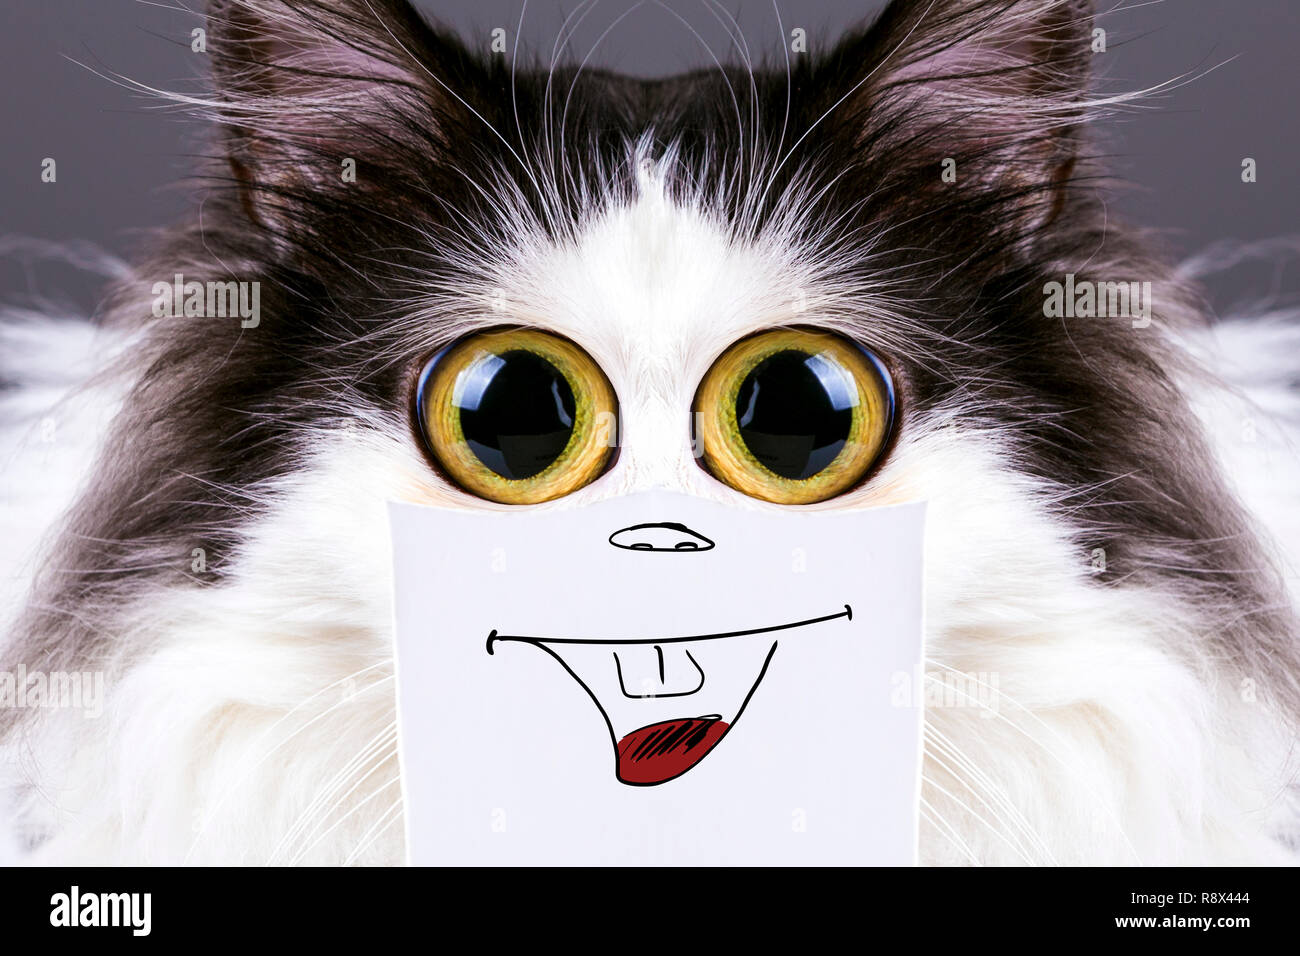 Schwarz und Weiß lustige Katze mit großen Augen und einem Lächeln auf  Karton Stockfotografie - Alamy